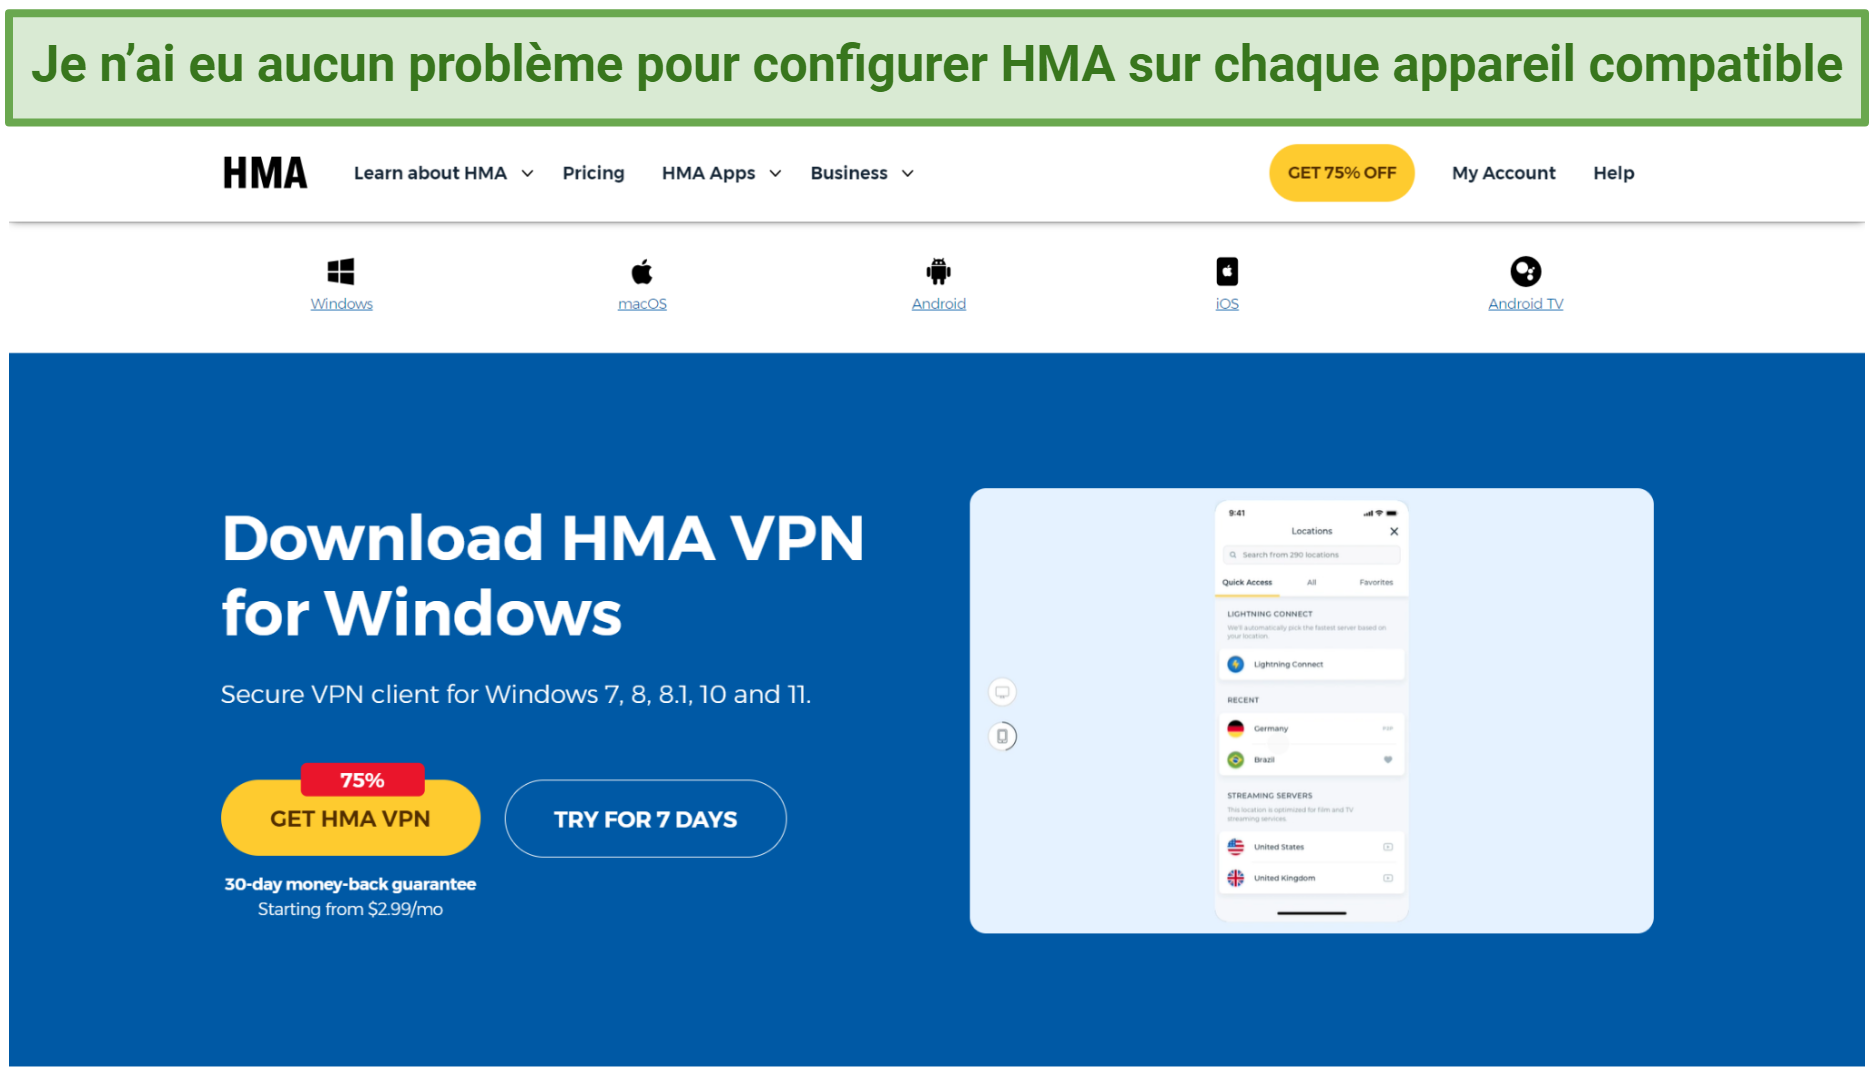 Capture d’écran de la page de téléchargement de HMA depuis le site web de HMA